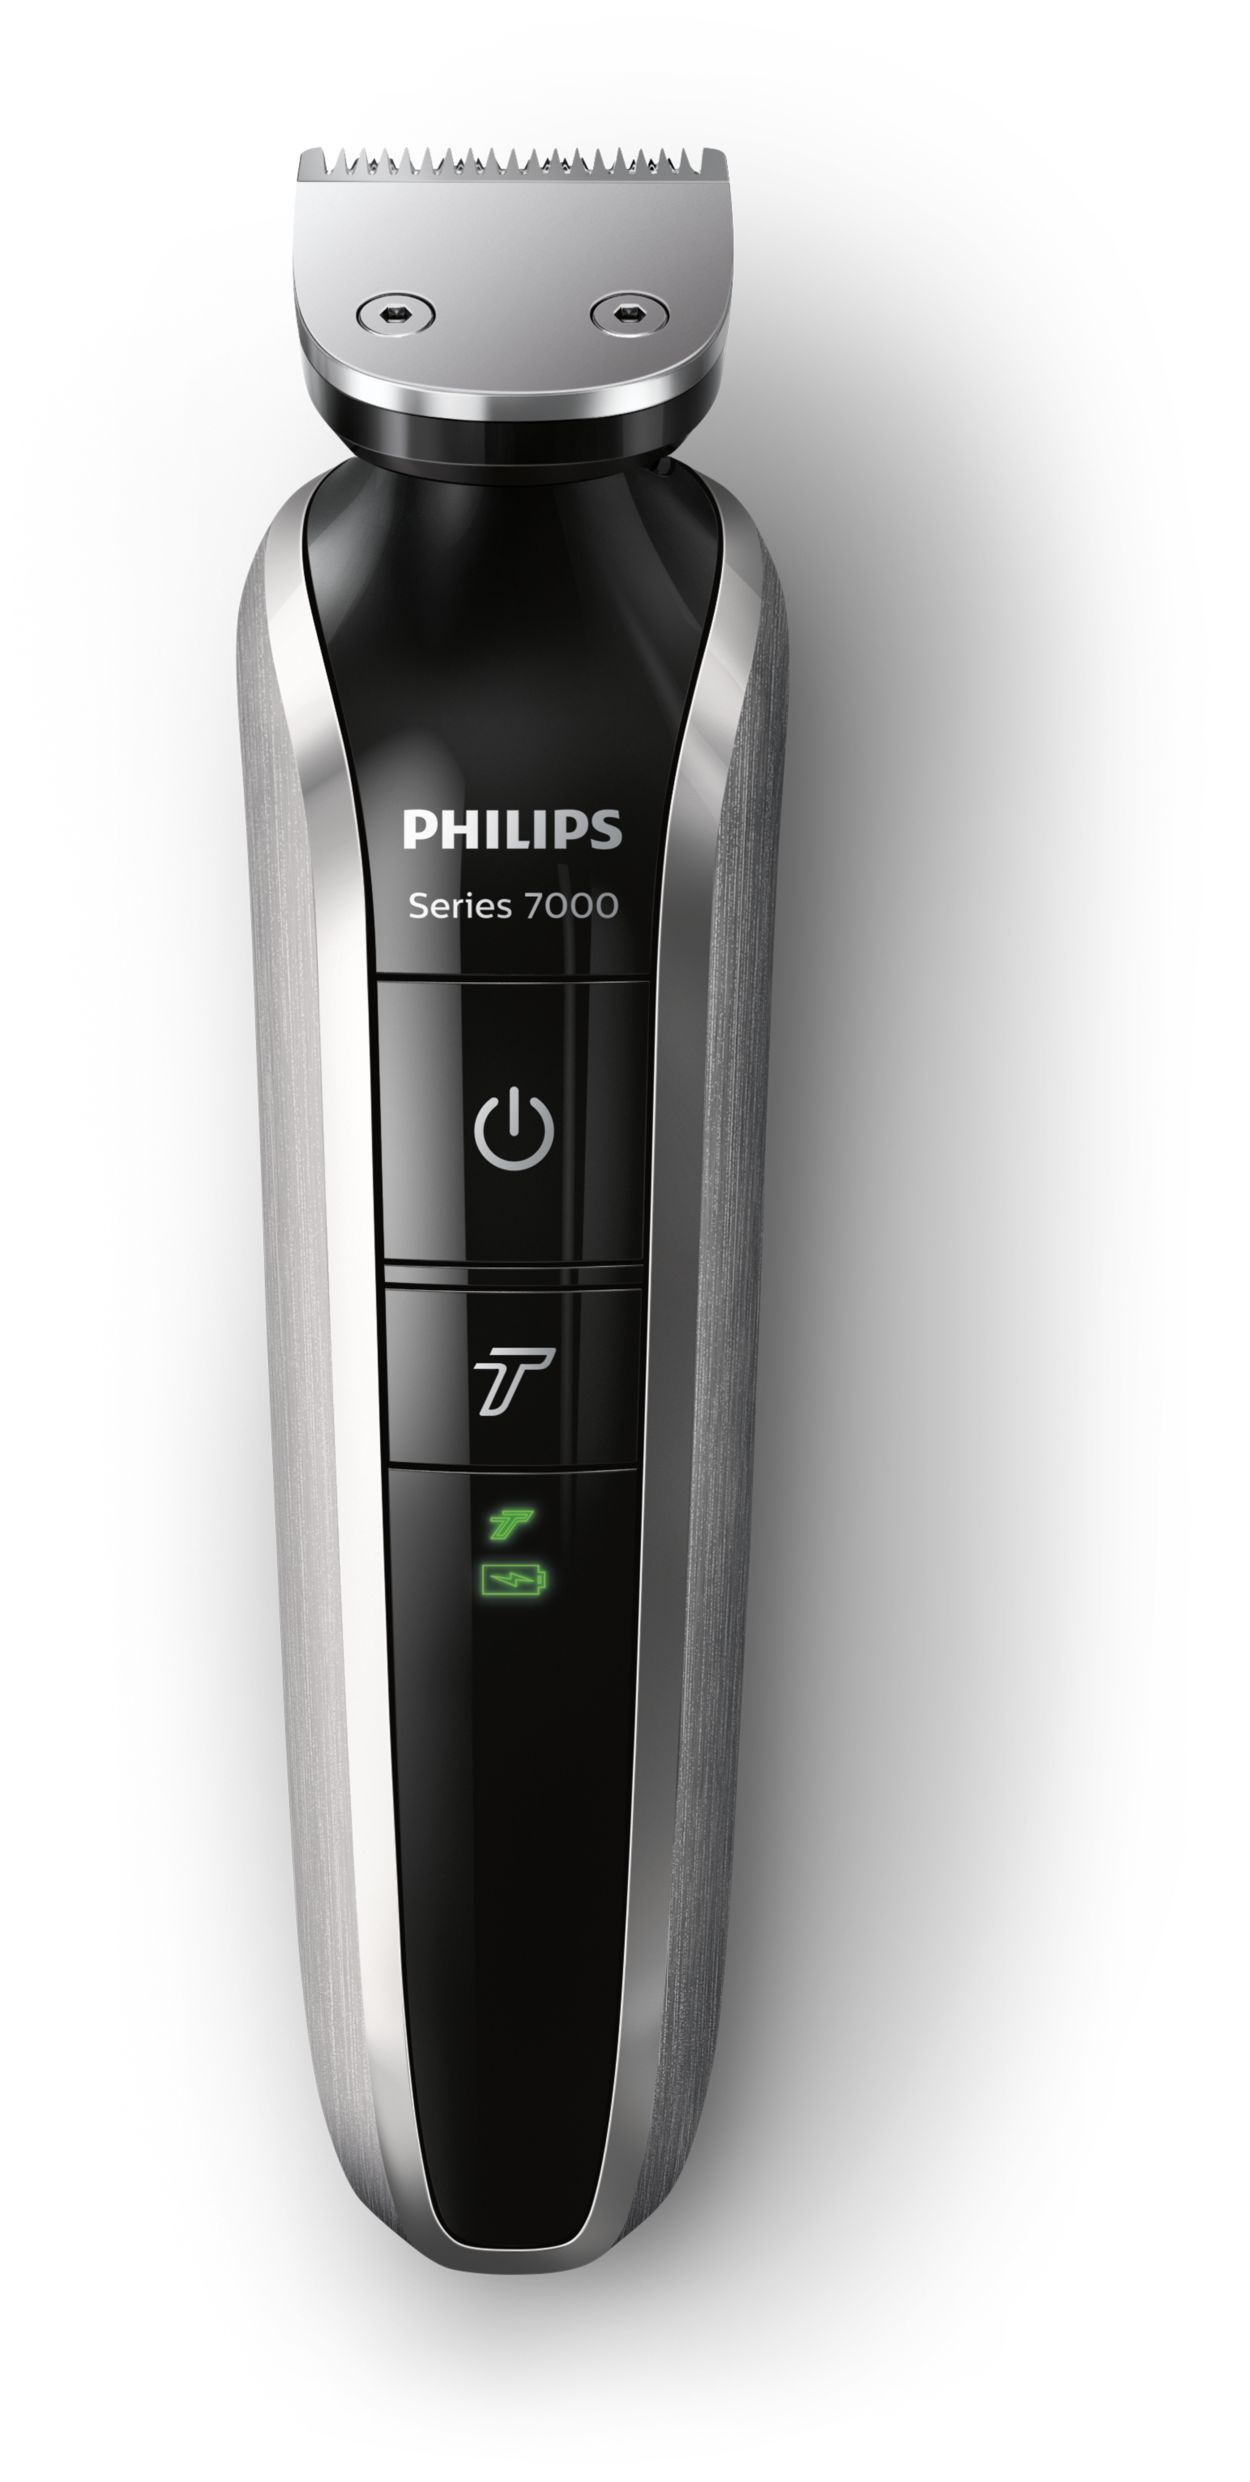 Philips Recortadora de Barba 19 en 1, Series 7000, Máquina Cortar